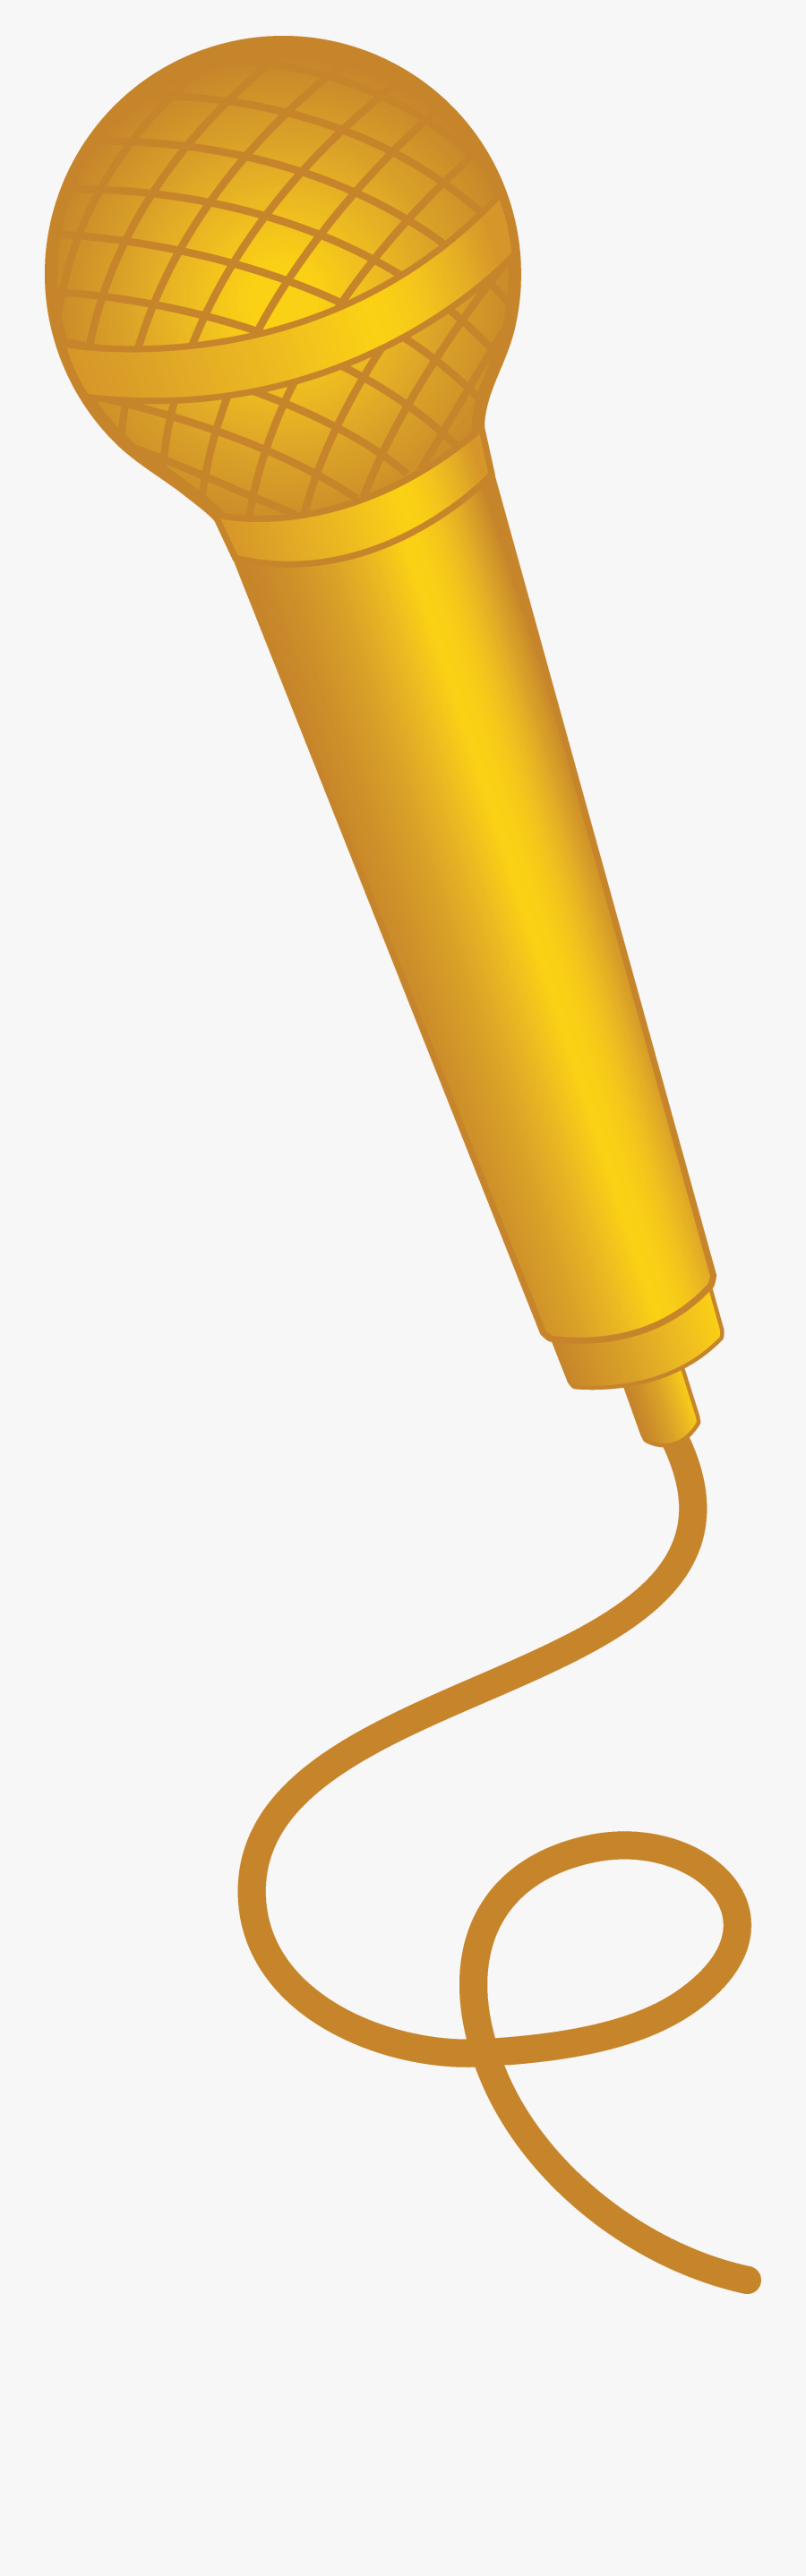 Little Sad Boy Clipart - Gold Microphone Clip Art, Transparent Clipart